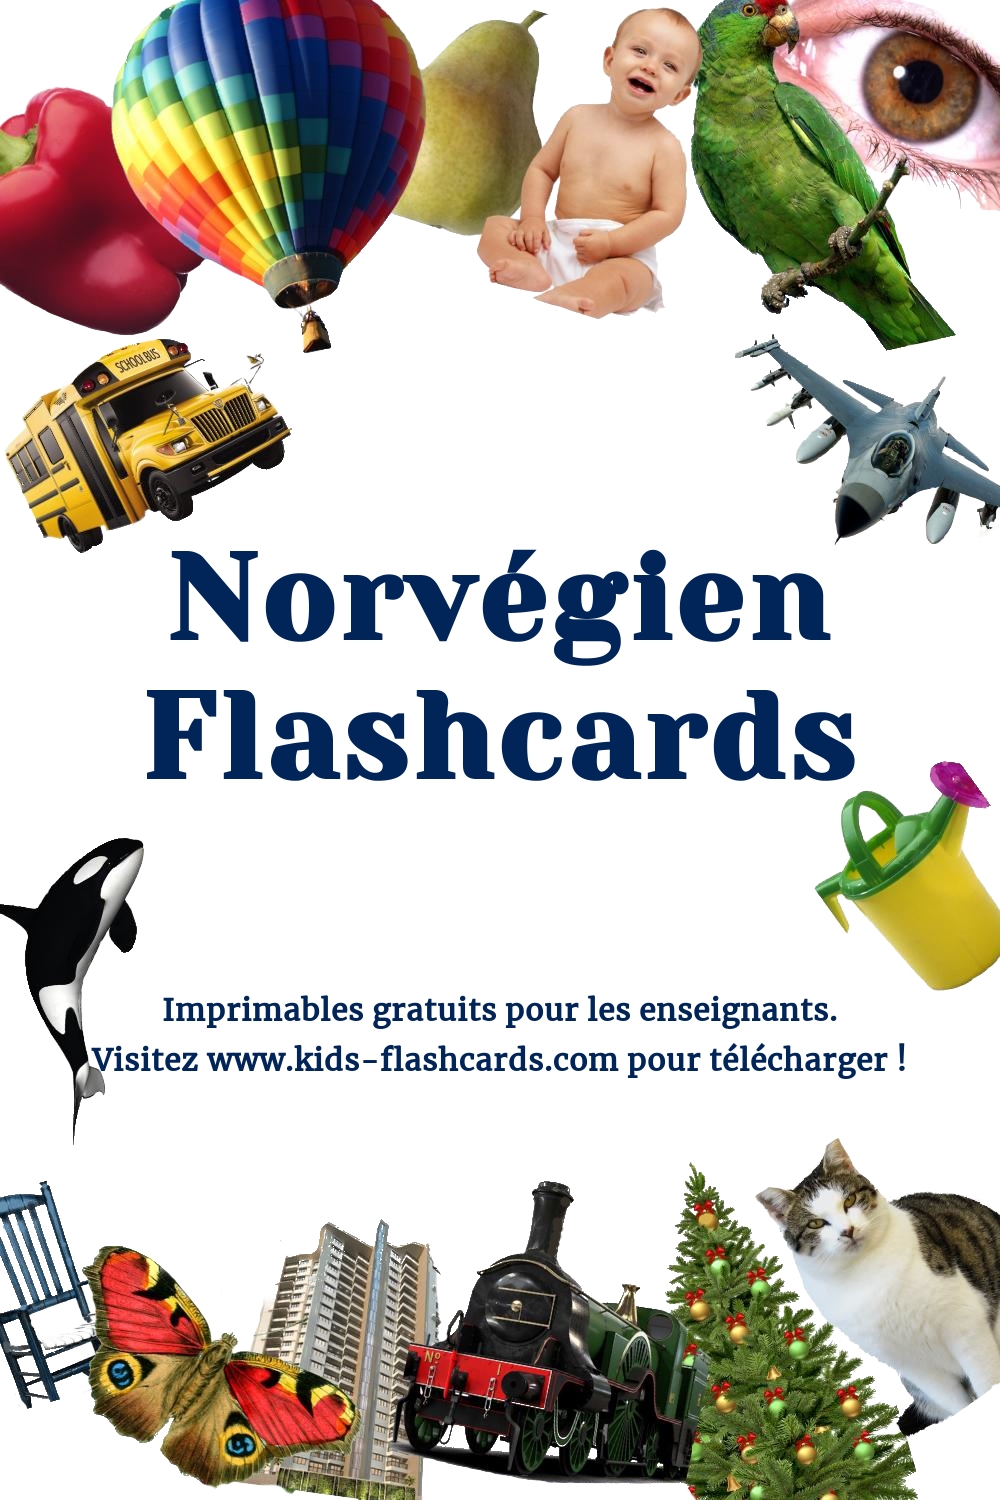 Imprimables gratuits en Norvégien